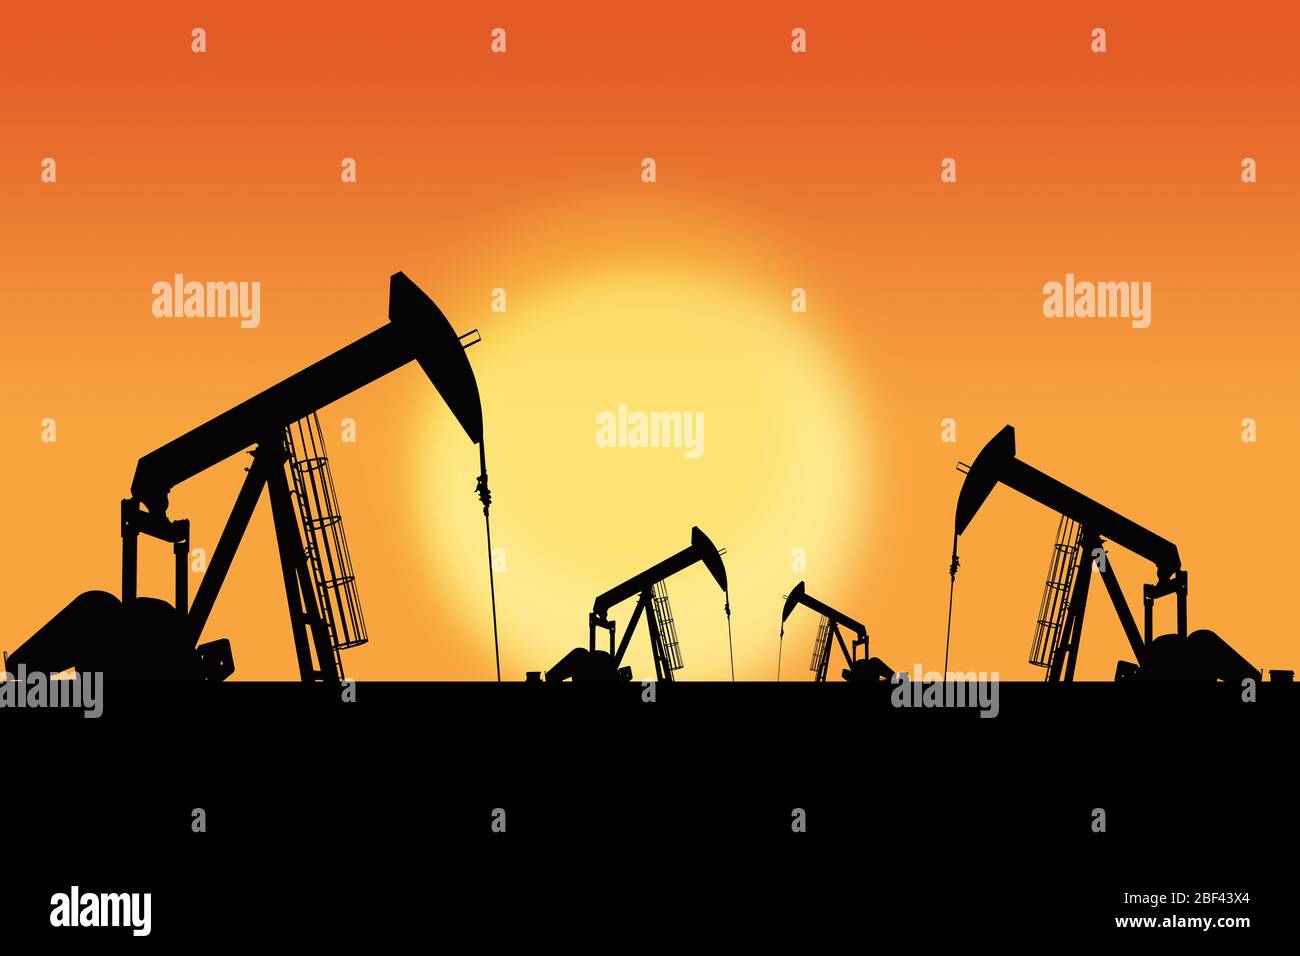 Reihen von Öl-Pumpjacks Silhouette gegen einen Sonnenuntergang Himmel mit Kopie Raum. Öl- und Gasenergie-Exploration. Stockfoto